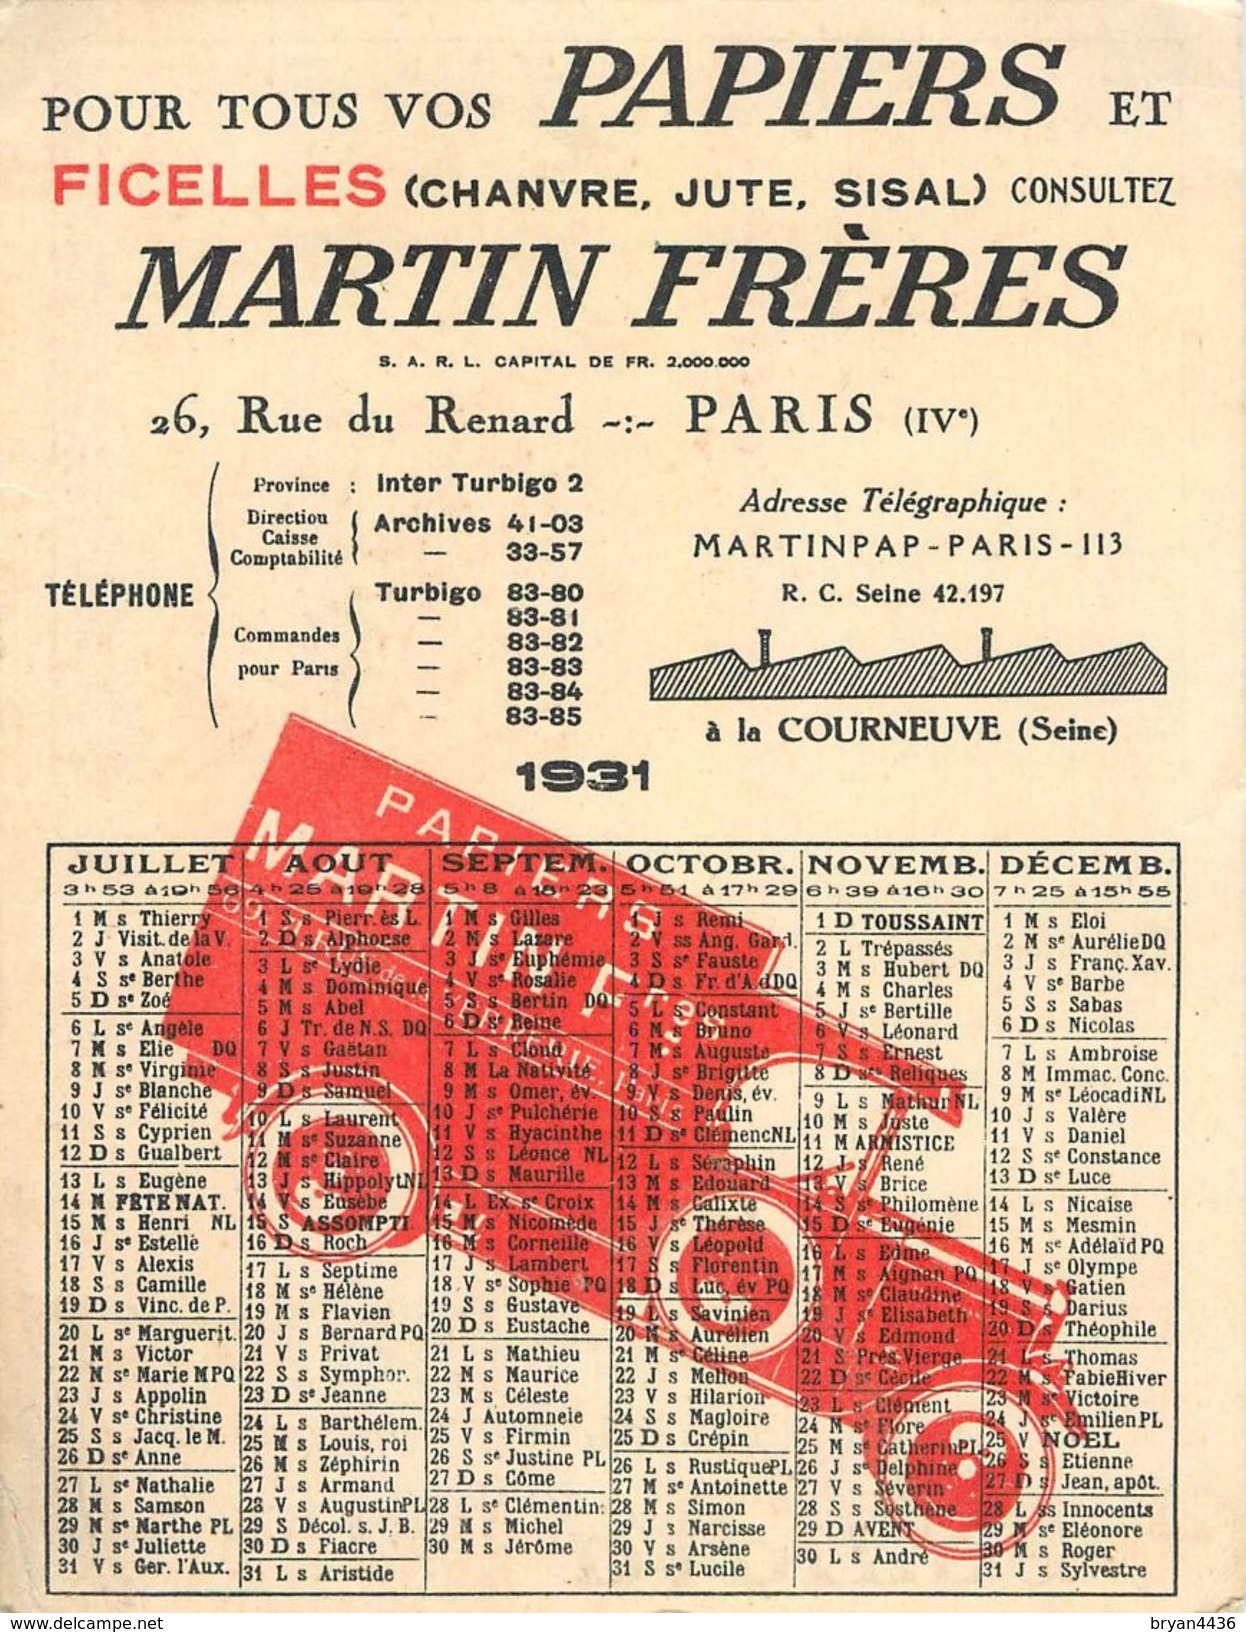 PAPIERS & FICELLES "MARTIN FRERES" - 26, RUE RENARD - PARIS IV° - CARTE COMMERCIALE CALENDRIER - 1931 - (11,5 X 15 Cm) - Arrondissement: 04